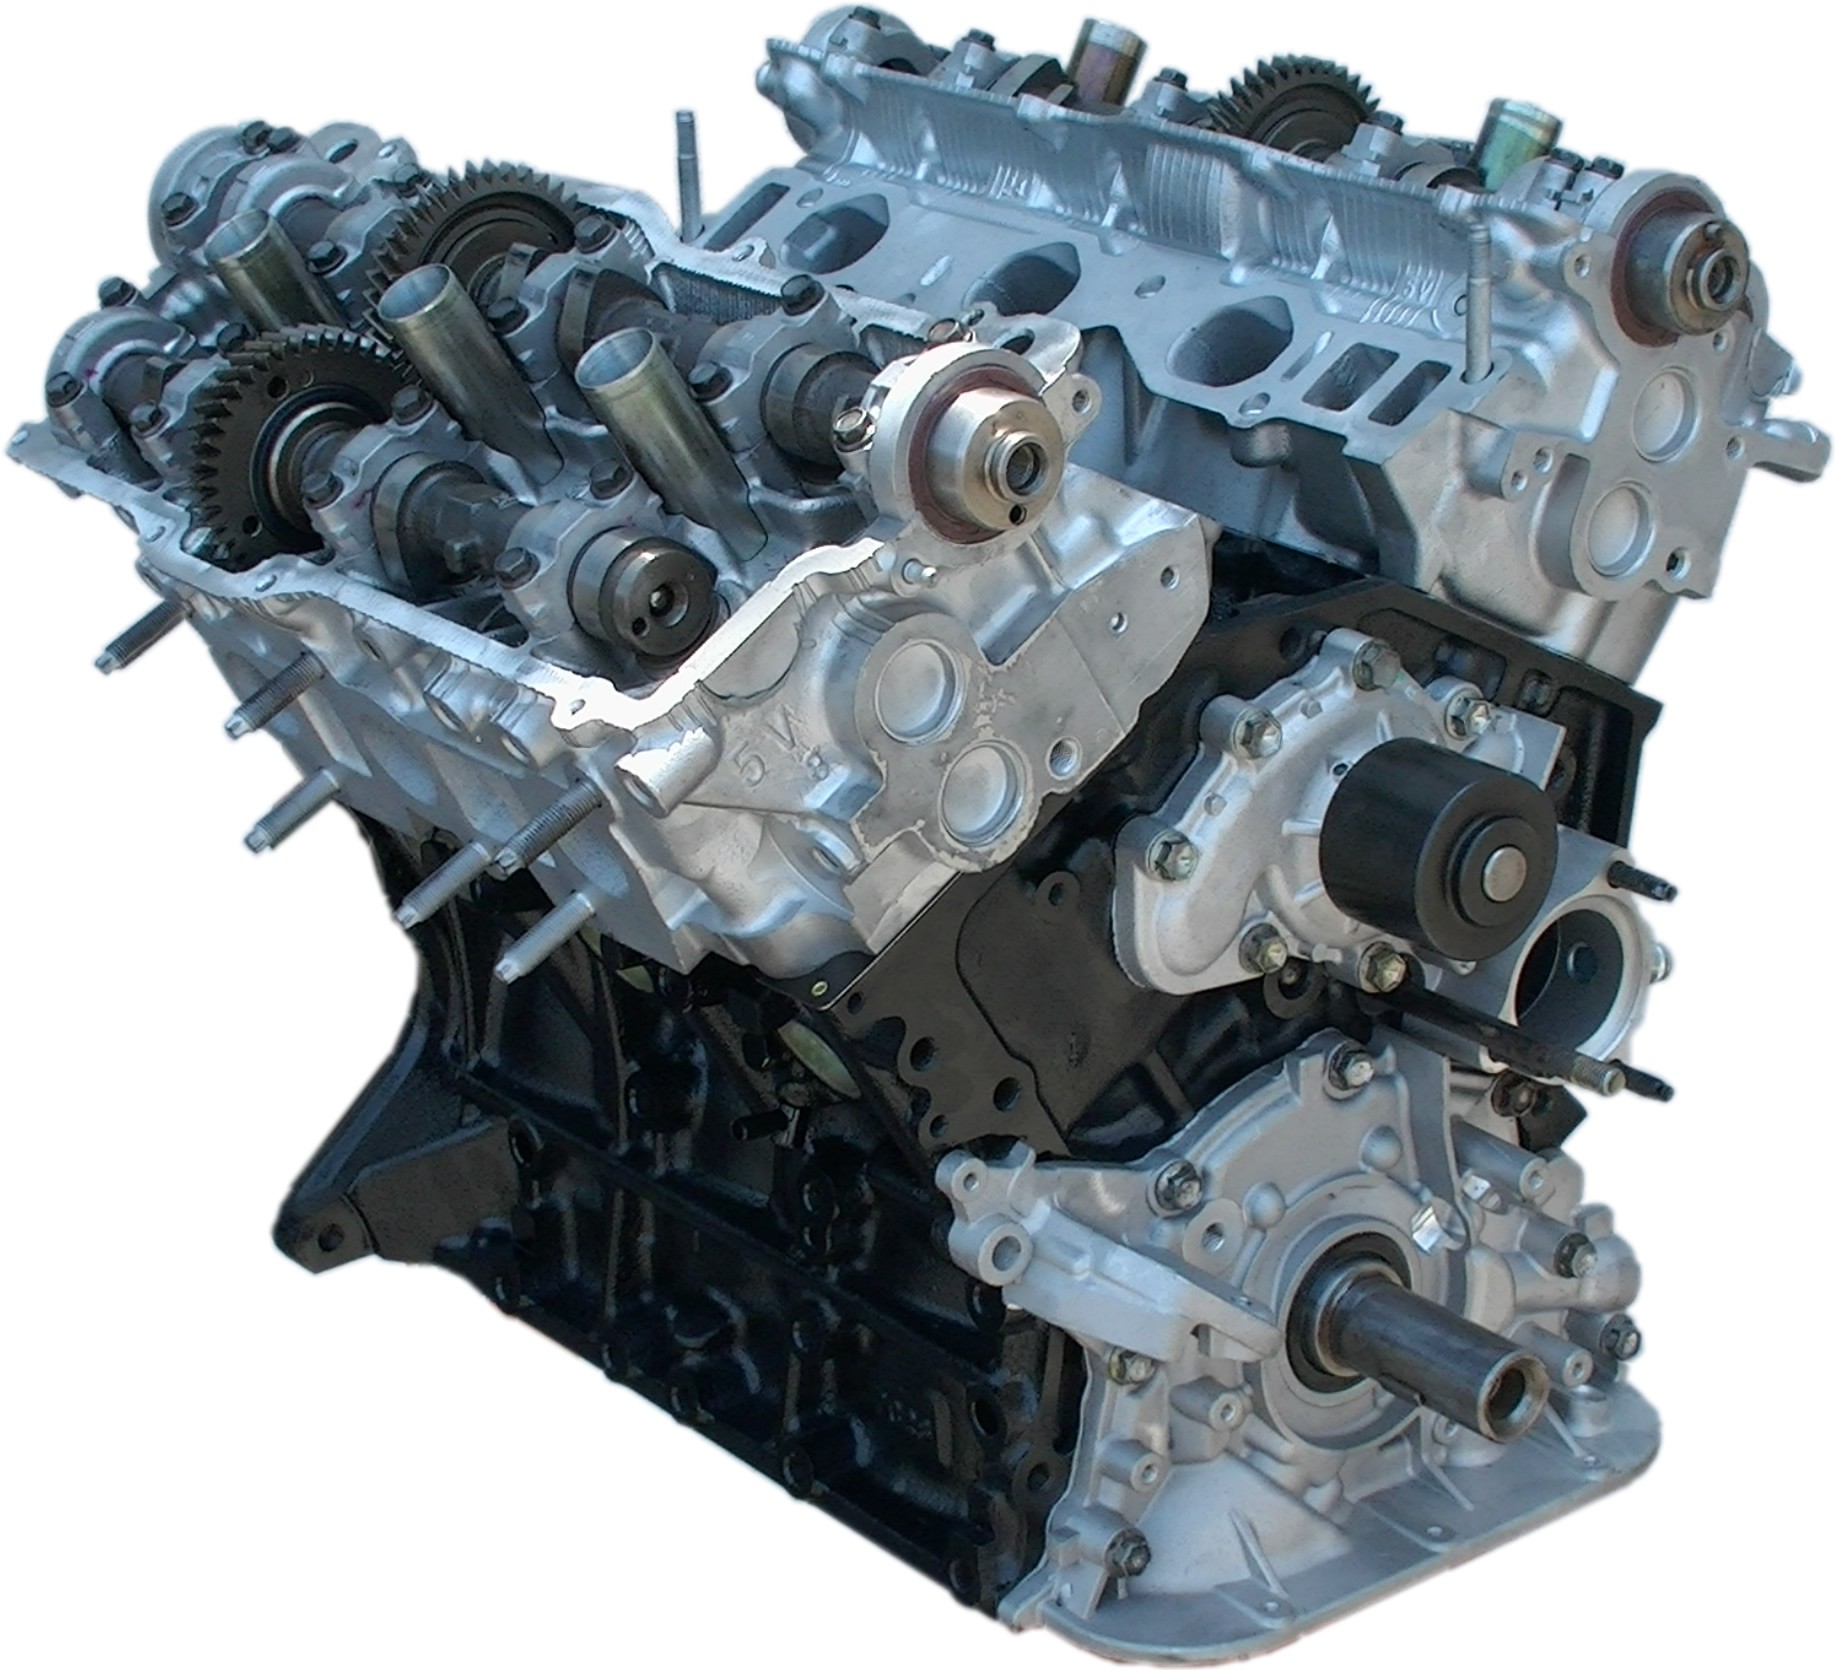 » Rebuilt 96-04 Toyota Tacoma V6 5VZE 3.4L Longblock Engine